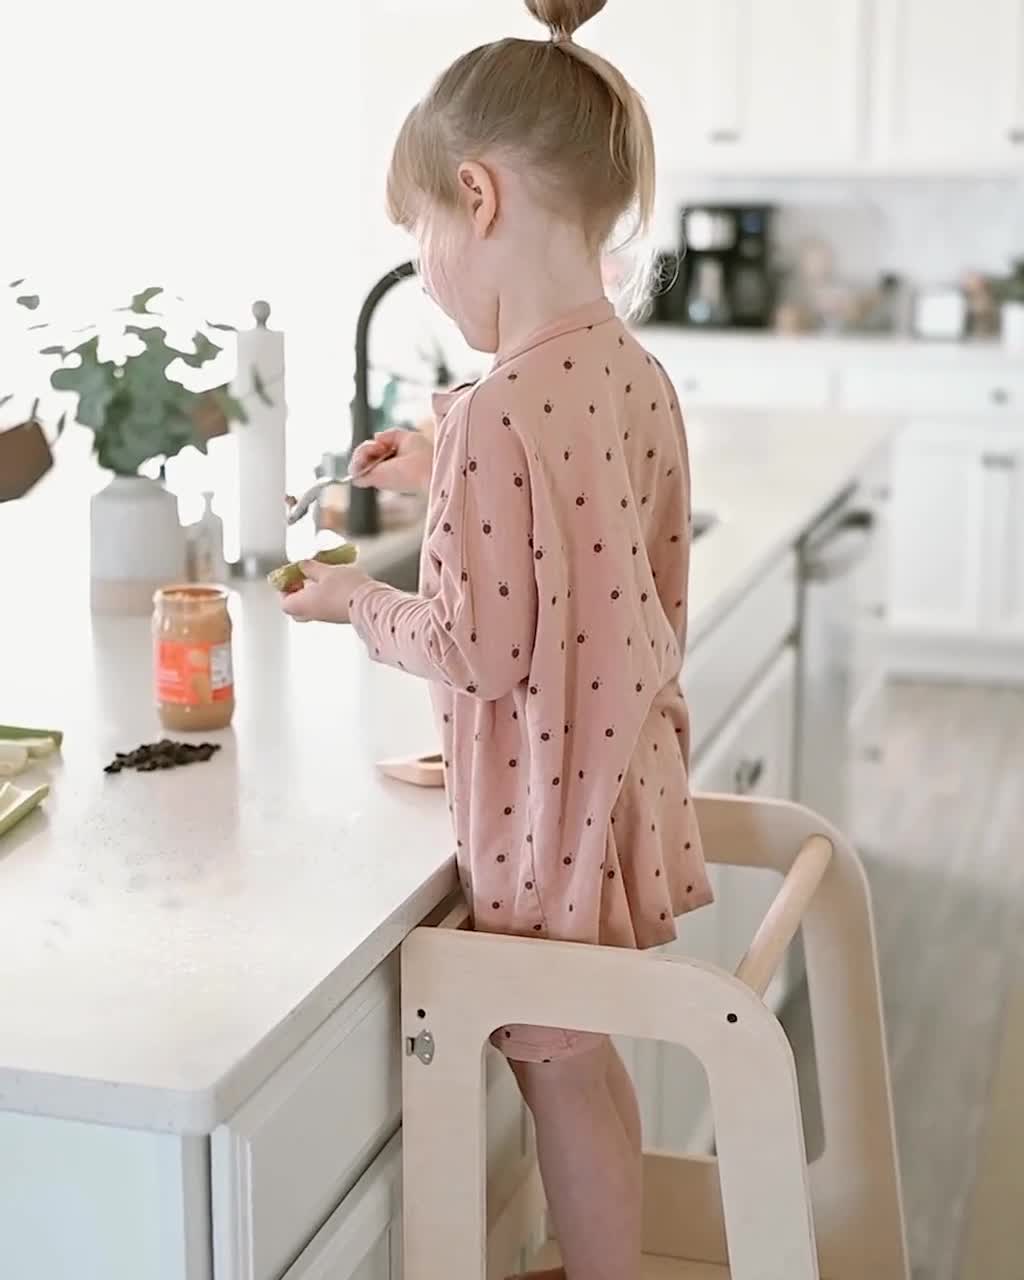 Mini Chef Convertible by Piccalio® Montessori Toddler Helper Tower